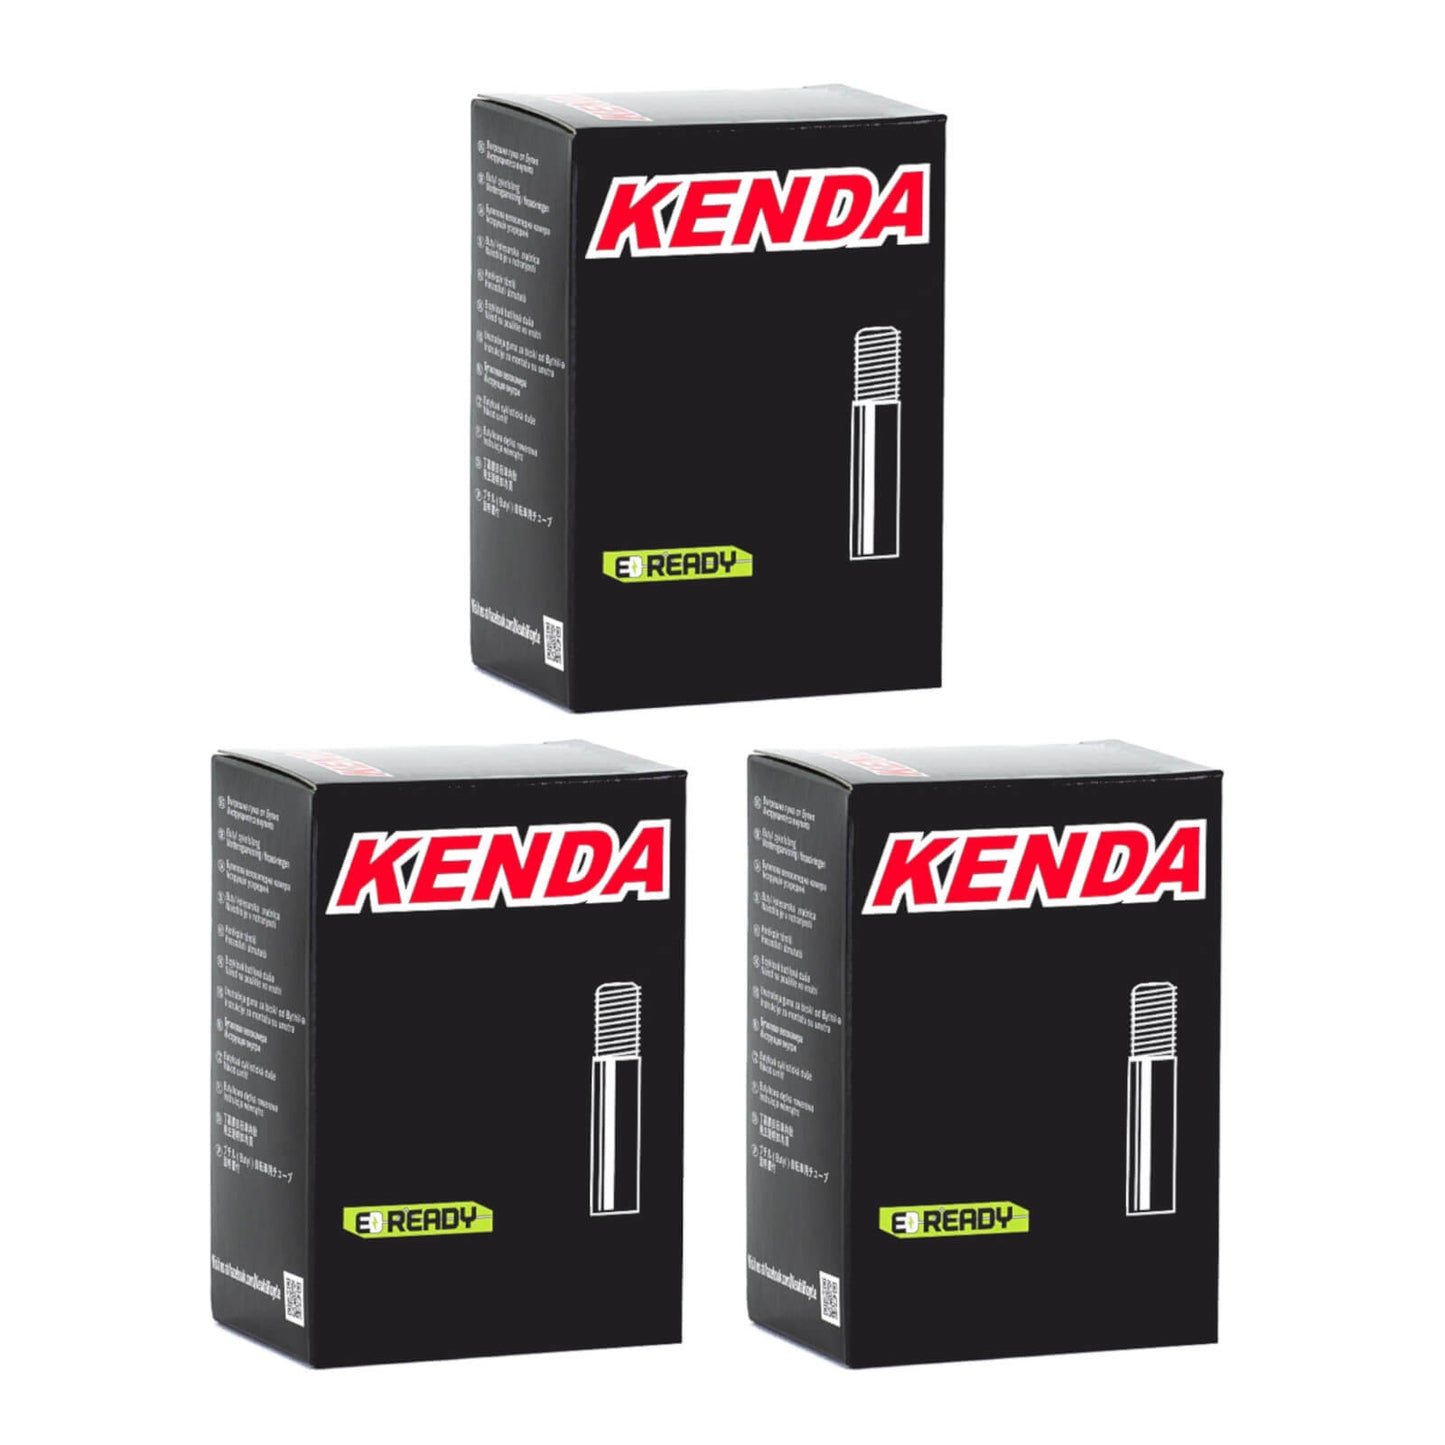 Kenda 700x30-43c 700c Schrader Valve Bike Inner Tube Pack of 3